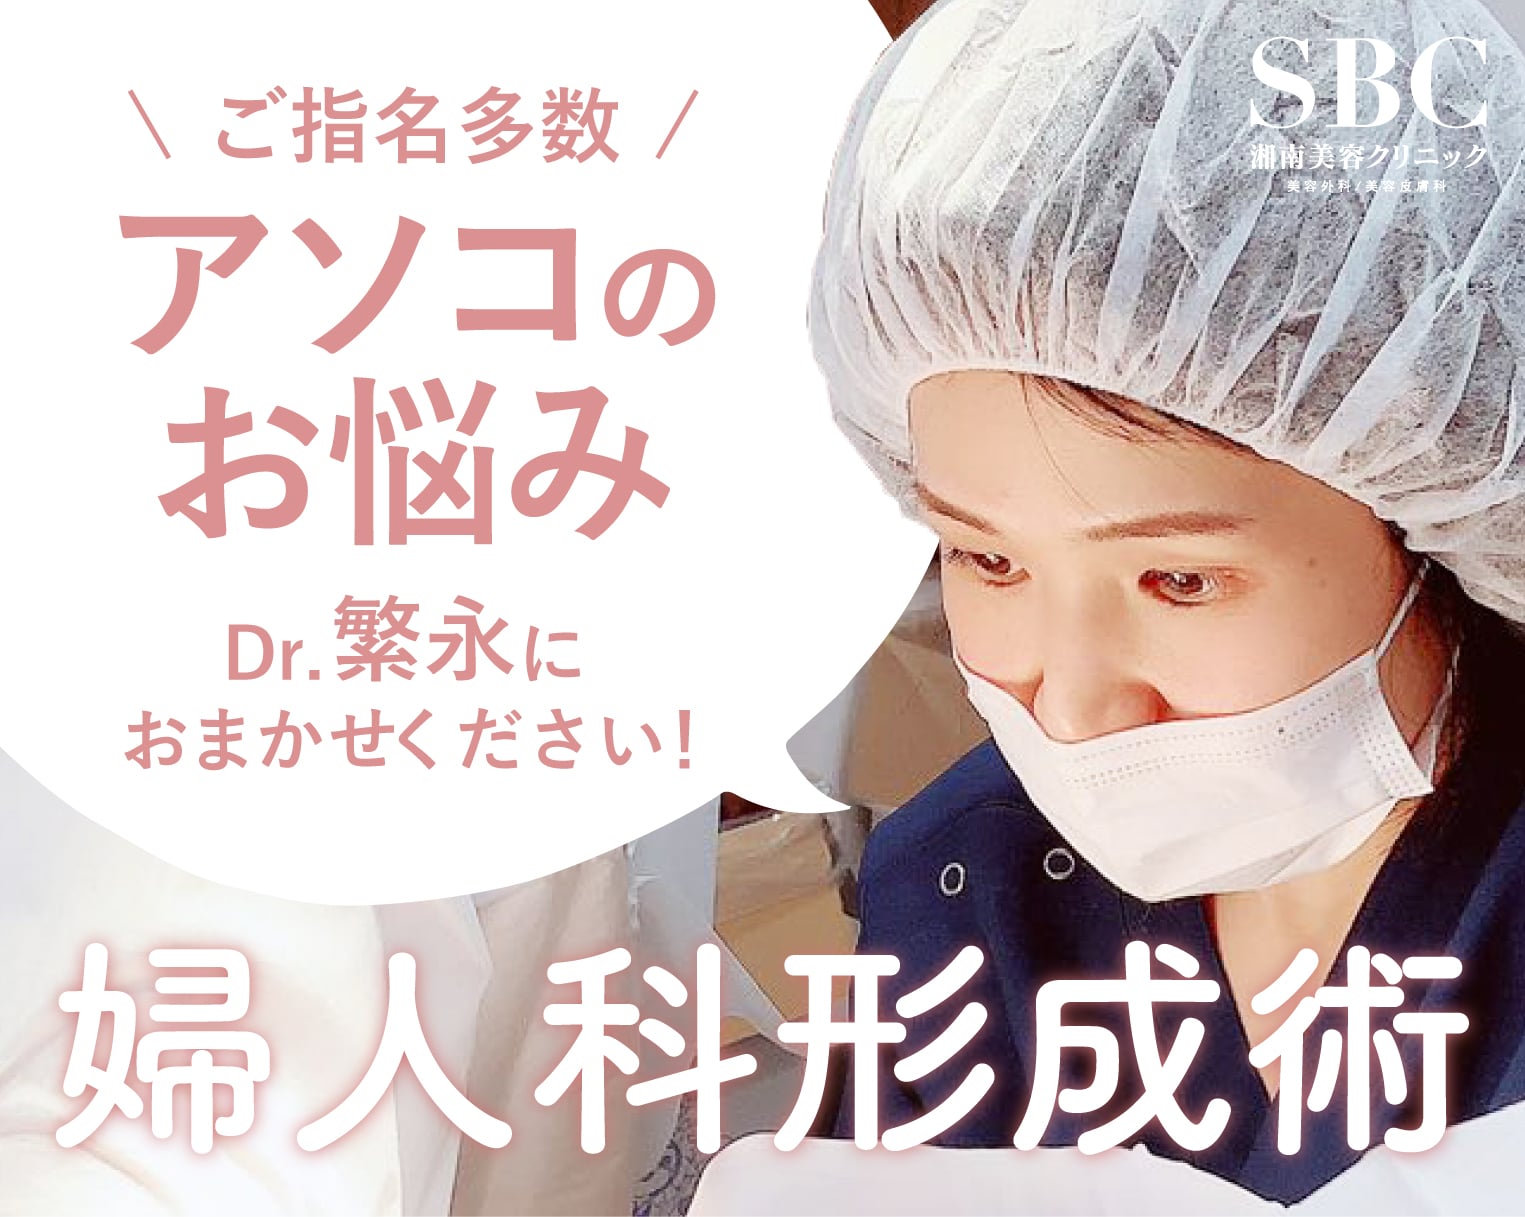 岡山で小陰唇縮小術をご検討のあなたへ。SBC岡山院にはご指名多数の女性医師が在籍！